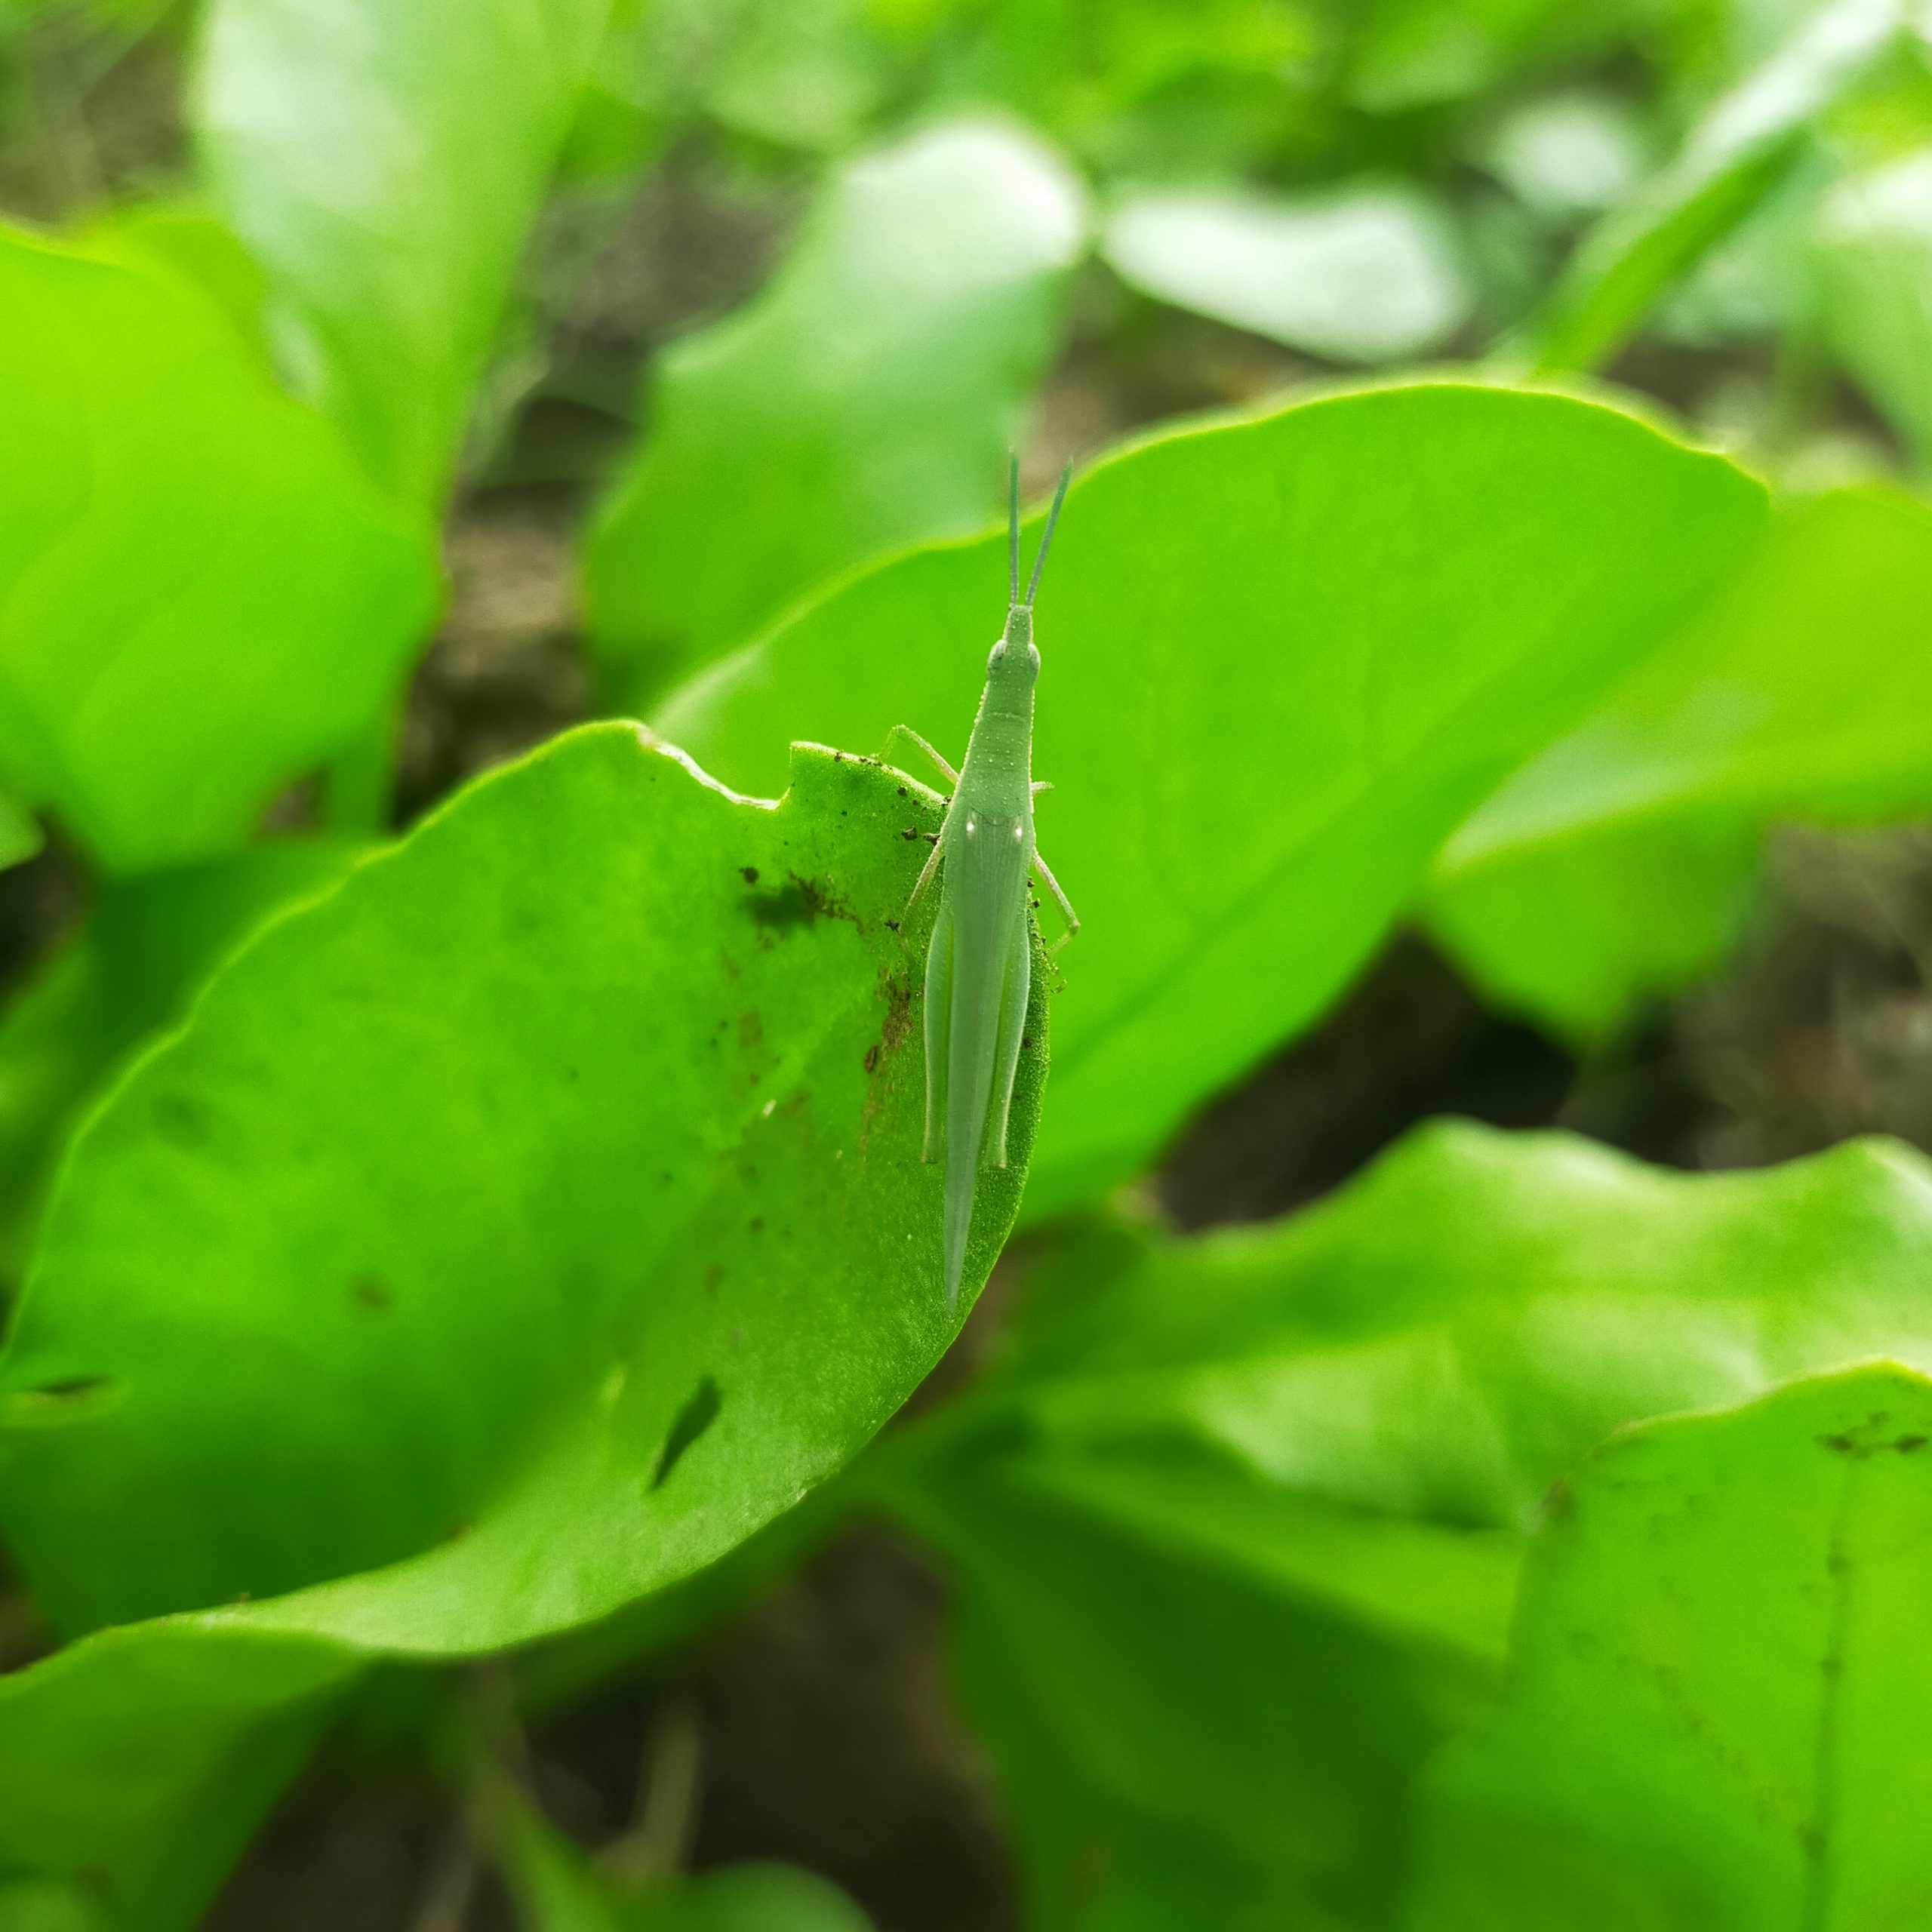 A grasshopper sitting on leaf